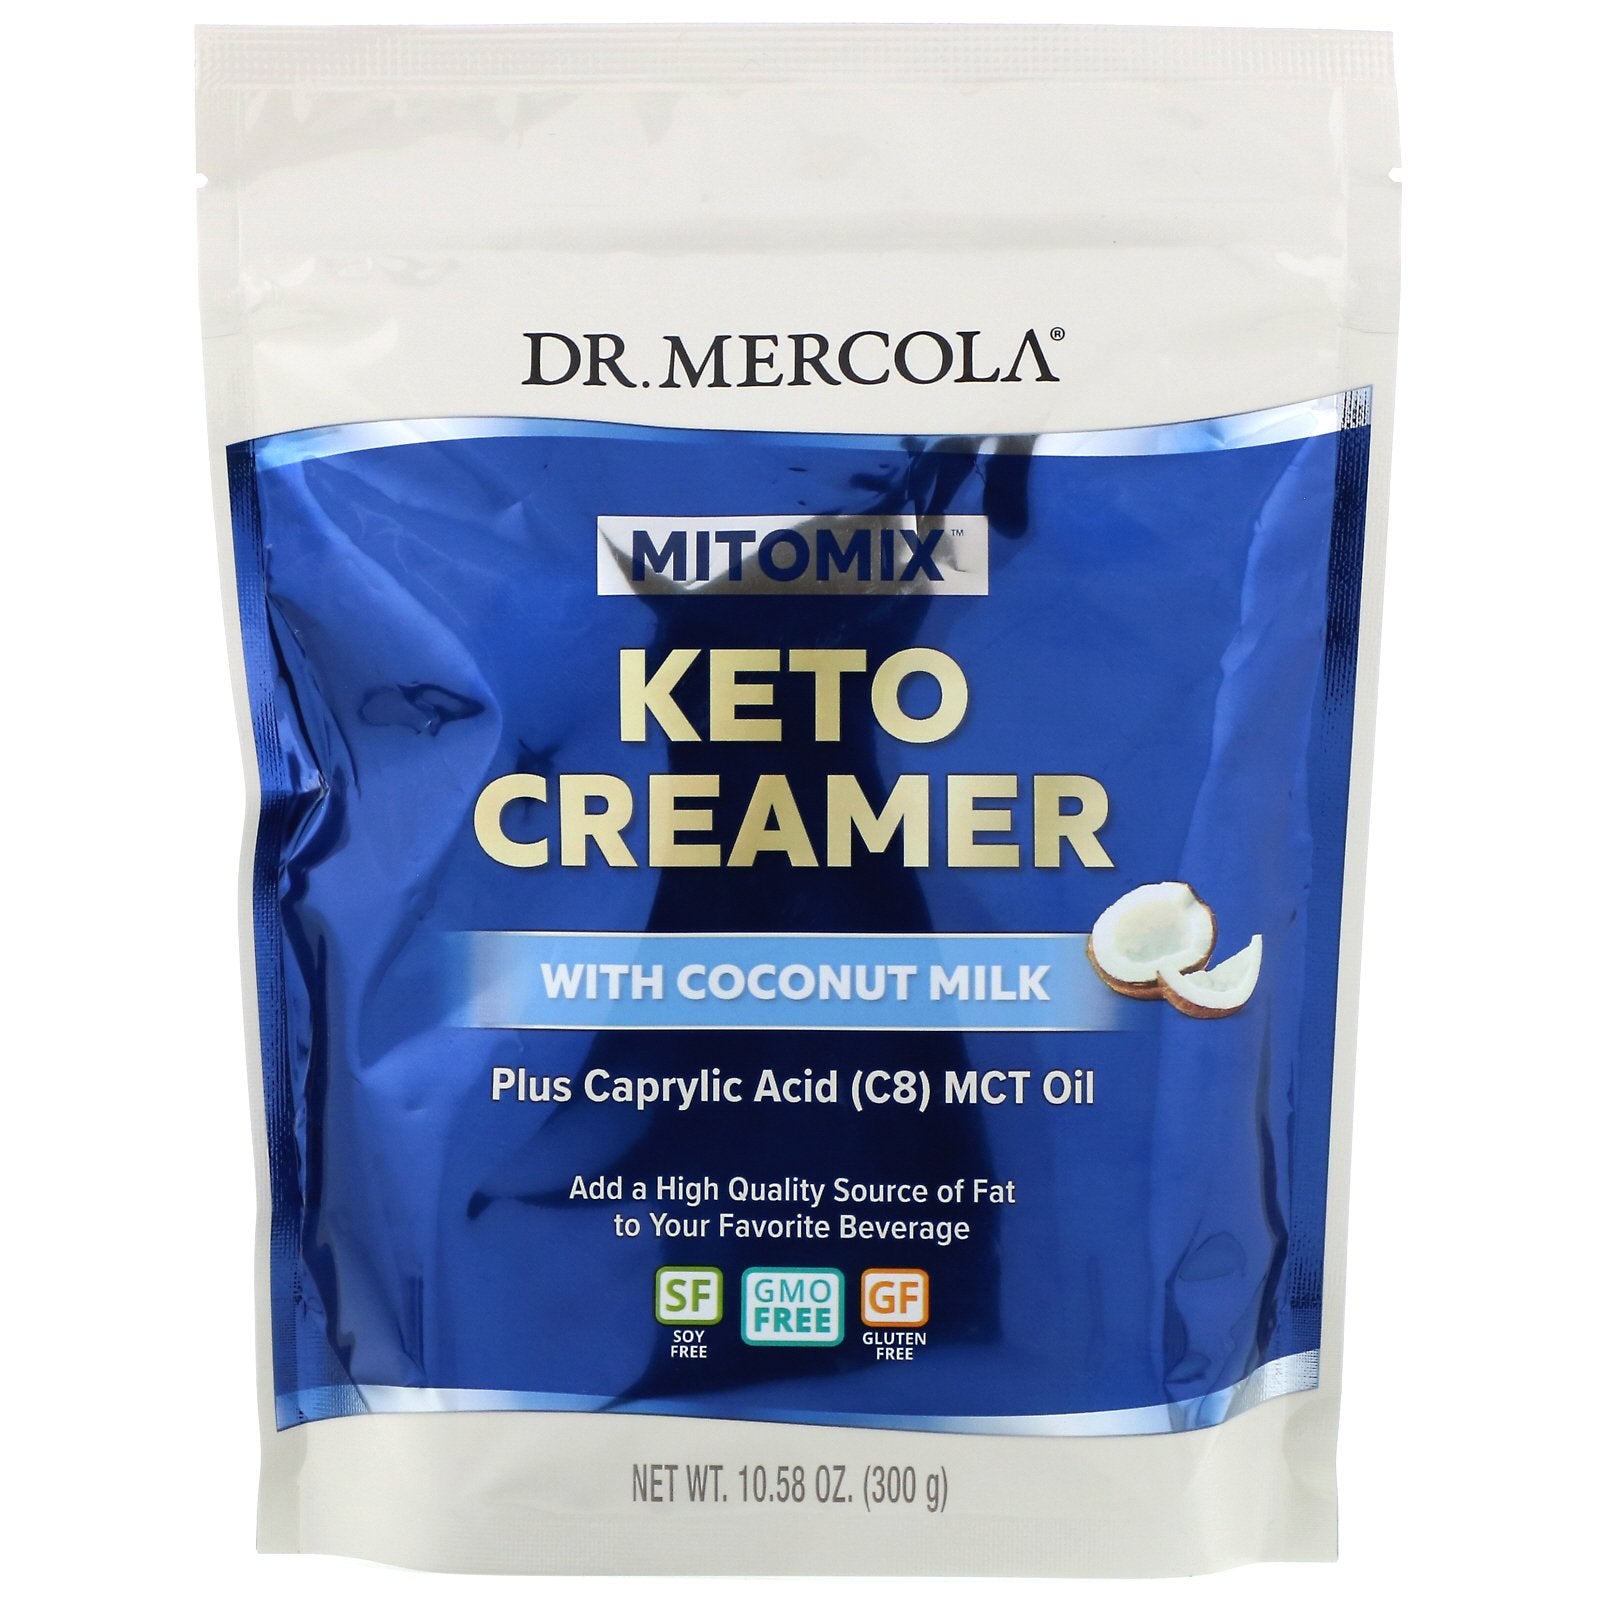 Dr. Mercola, Mitomix, Keto Creamer with Coconut Milk